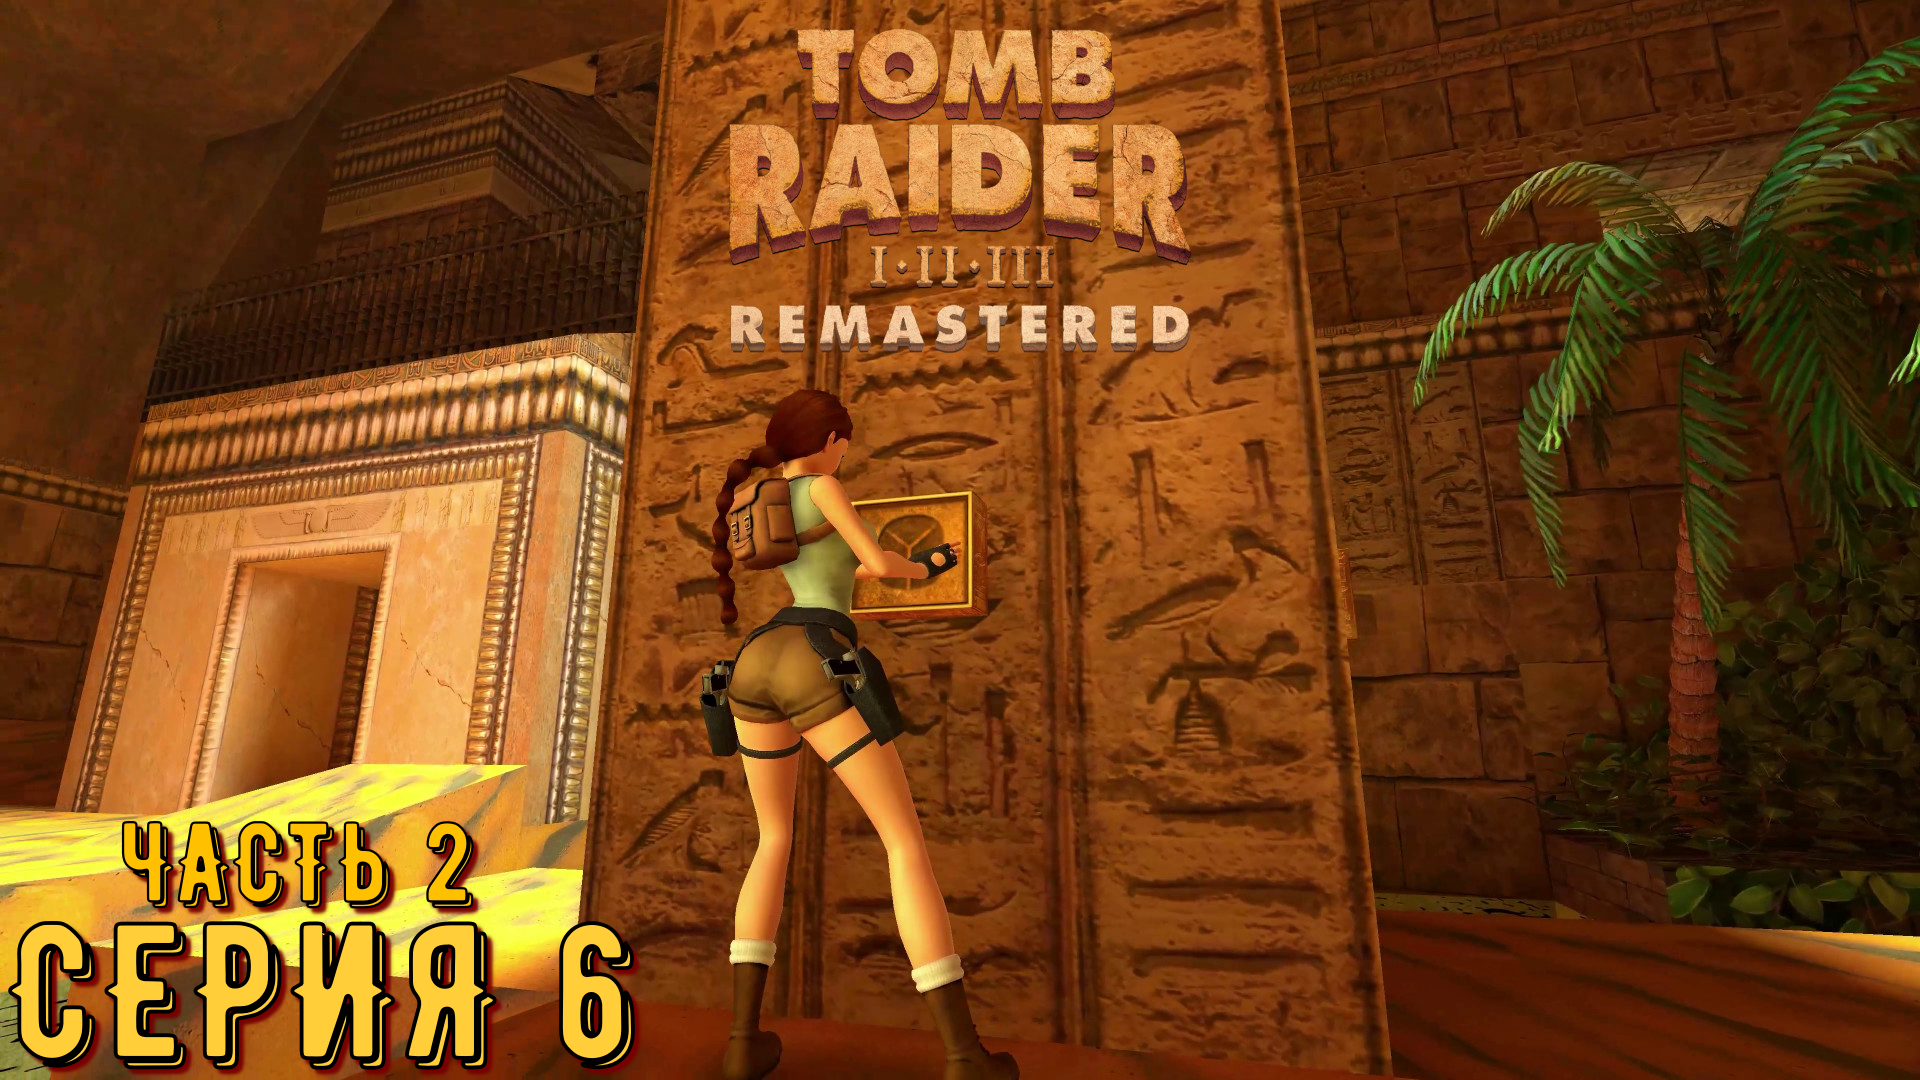 Tomb Raider 1-3 Remastered ► Серия 6 часть 2 ◄ | Полное прохождение  | Запись СТРИМа